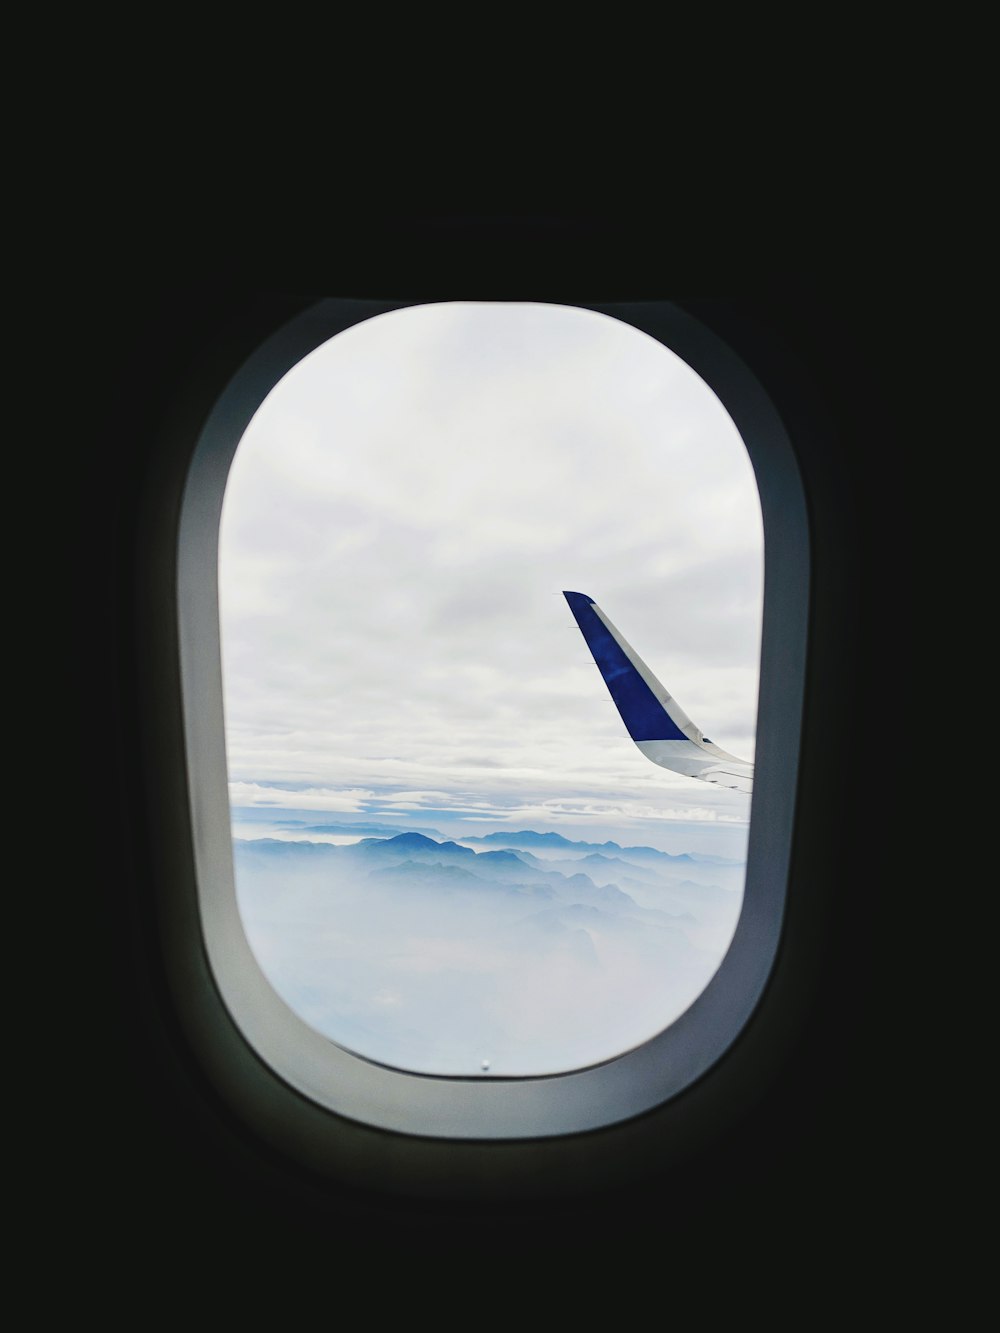 Blau lackierte Flügelspitze eines Verkehrsflugzeugs durch das Fenster gesehen